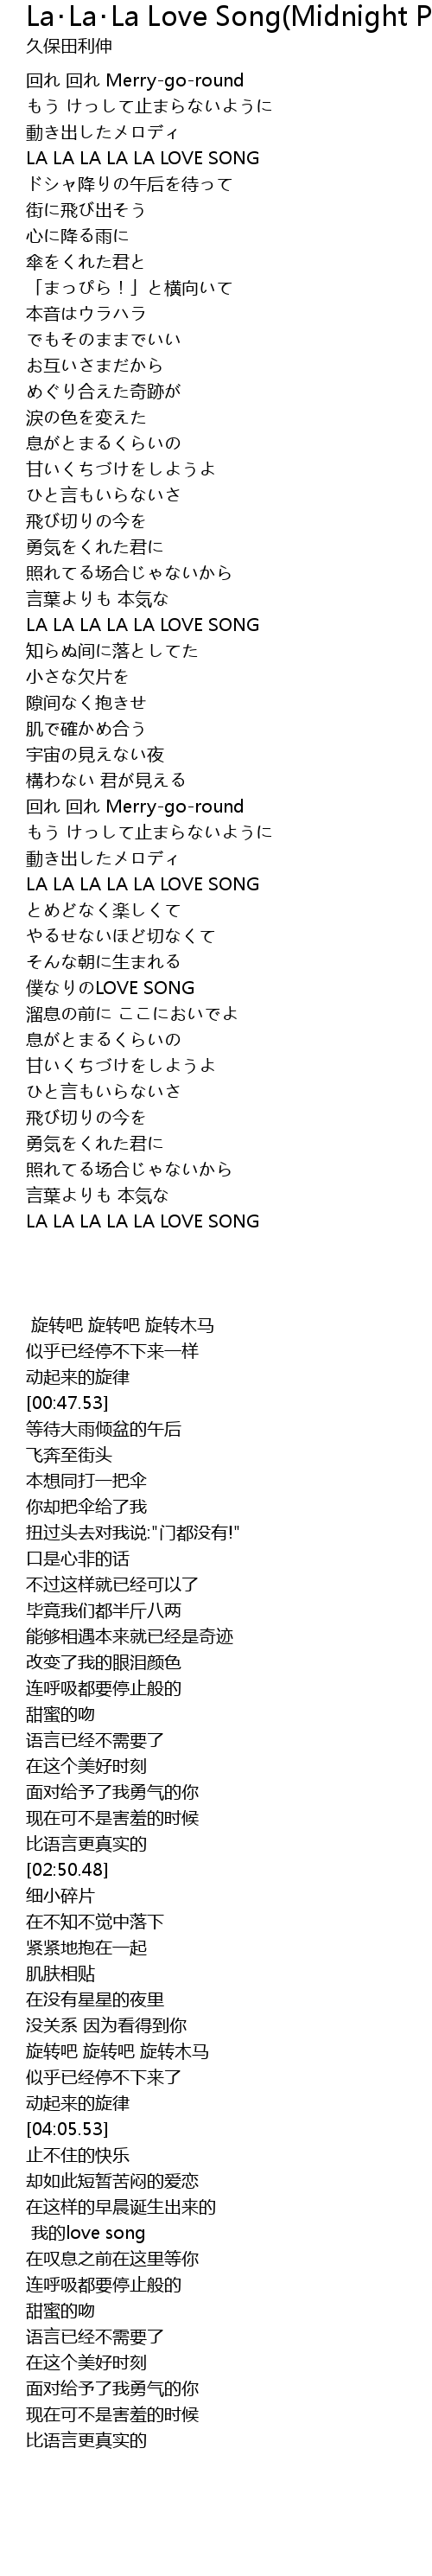 La La La Love Song Midnight Piano Version La La La Love Song Midnight Piano Version Lyrics Follow Lyrics